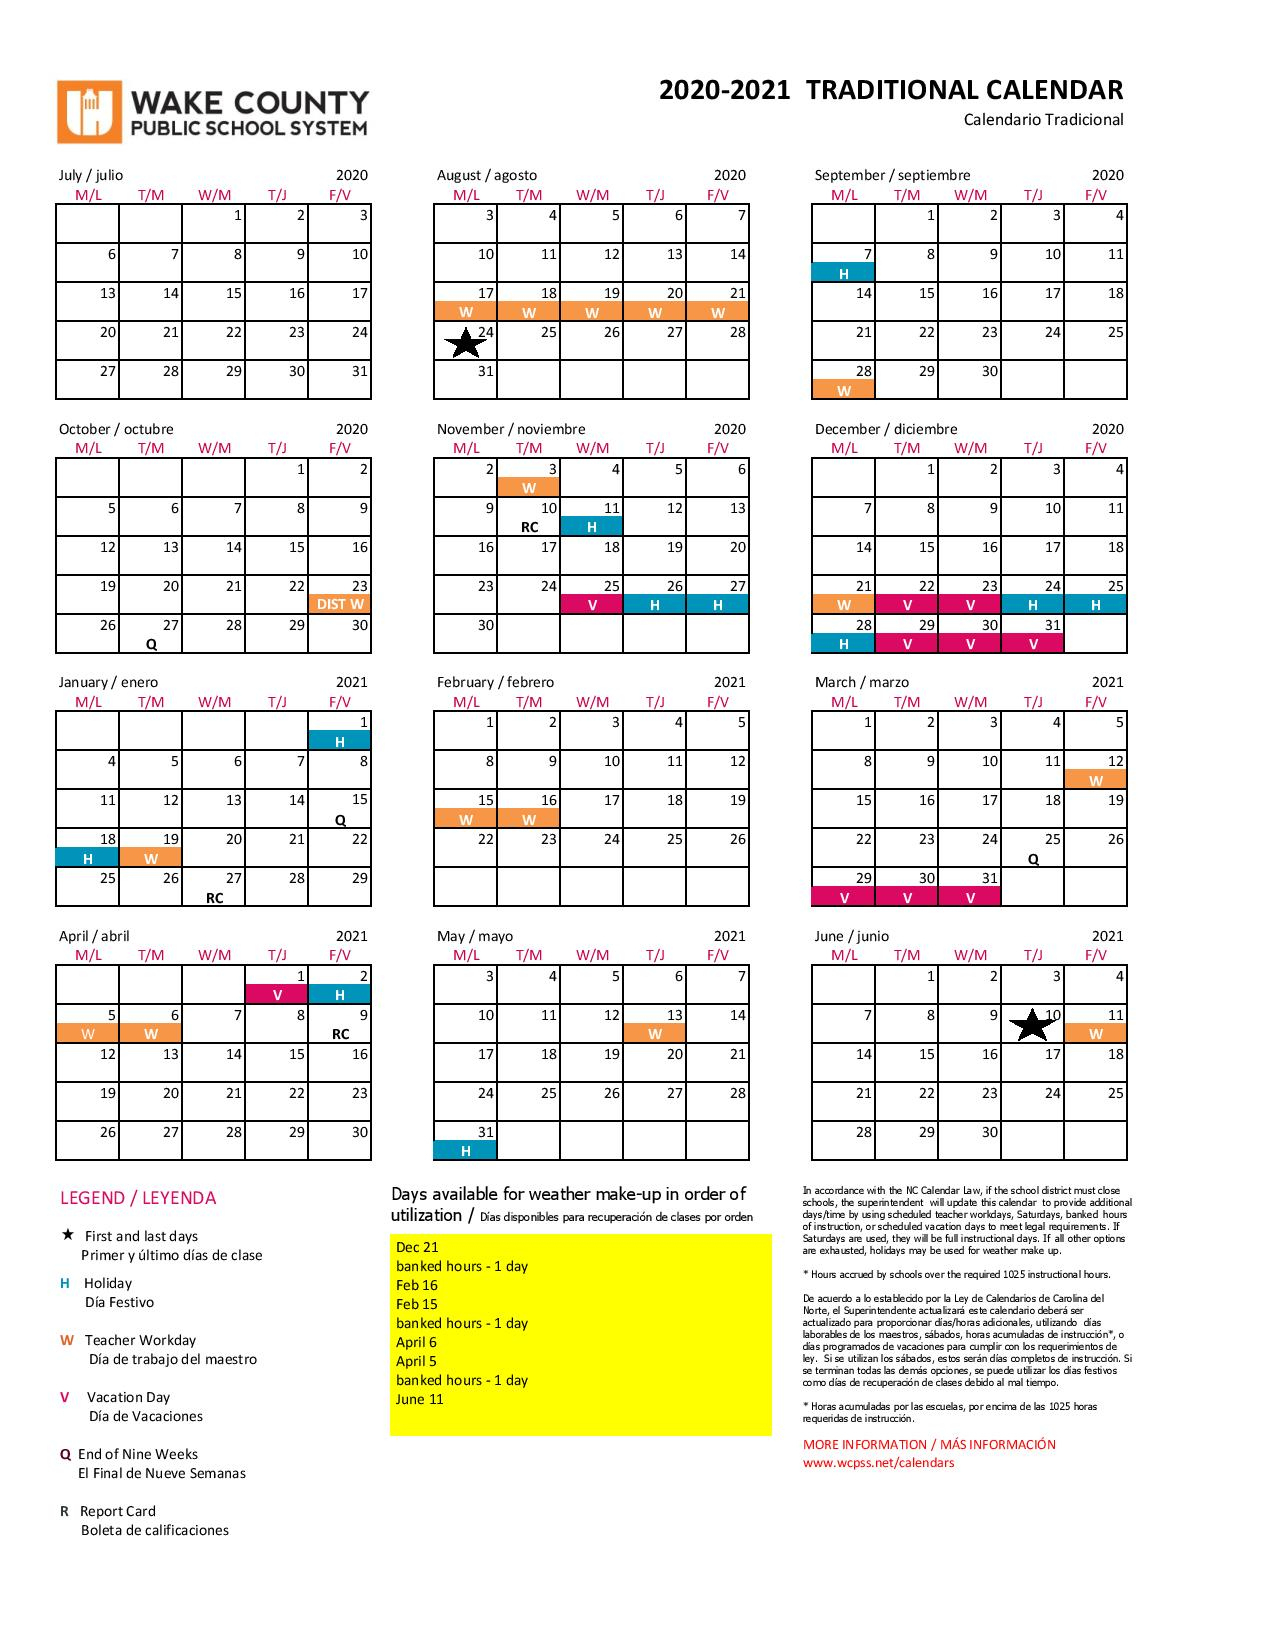 volusia-county-calendar-20-21-countycalendars